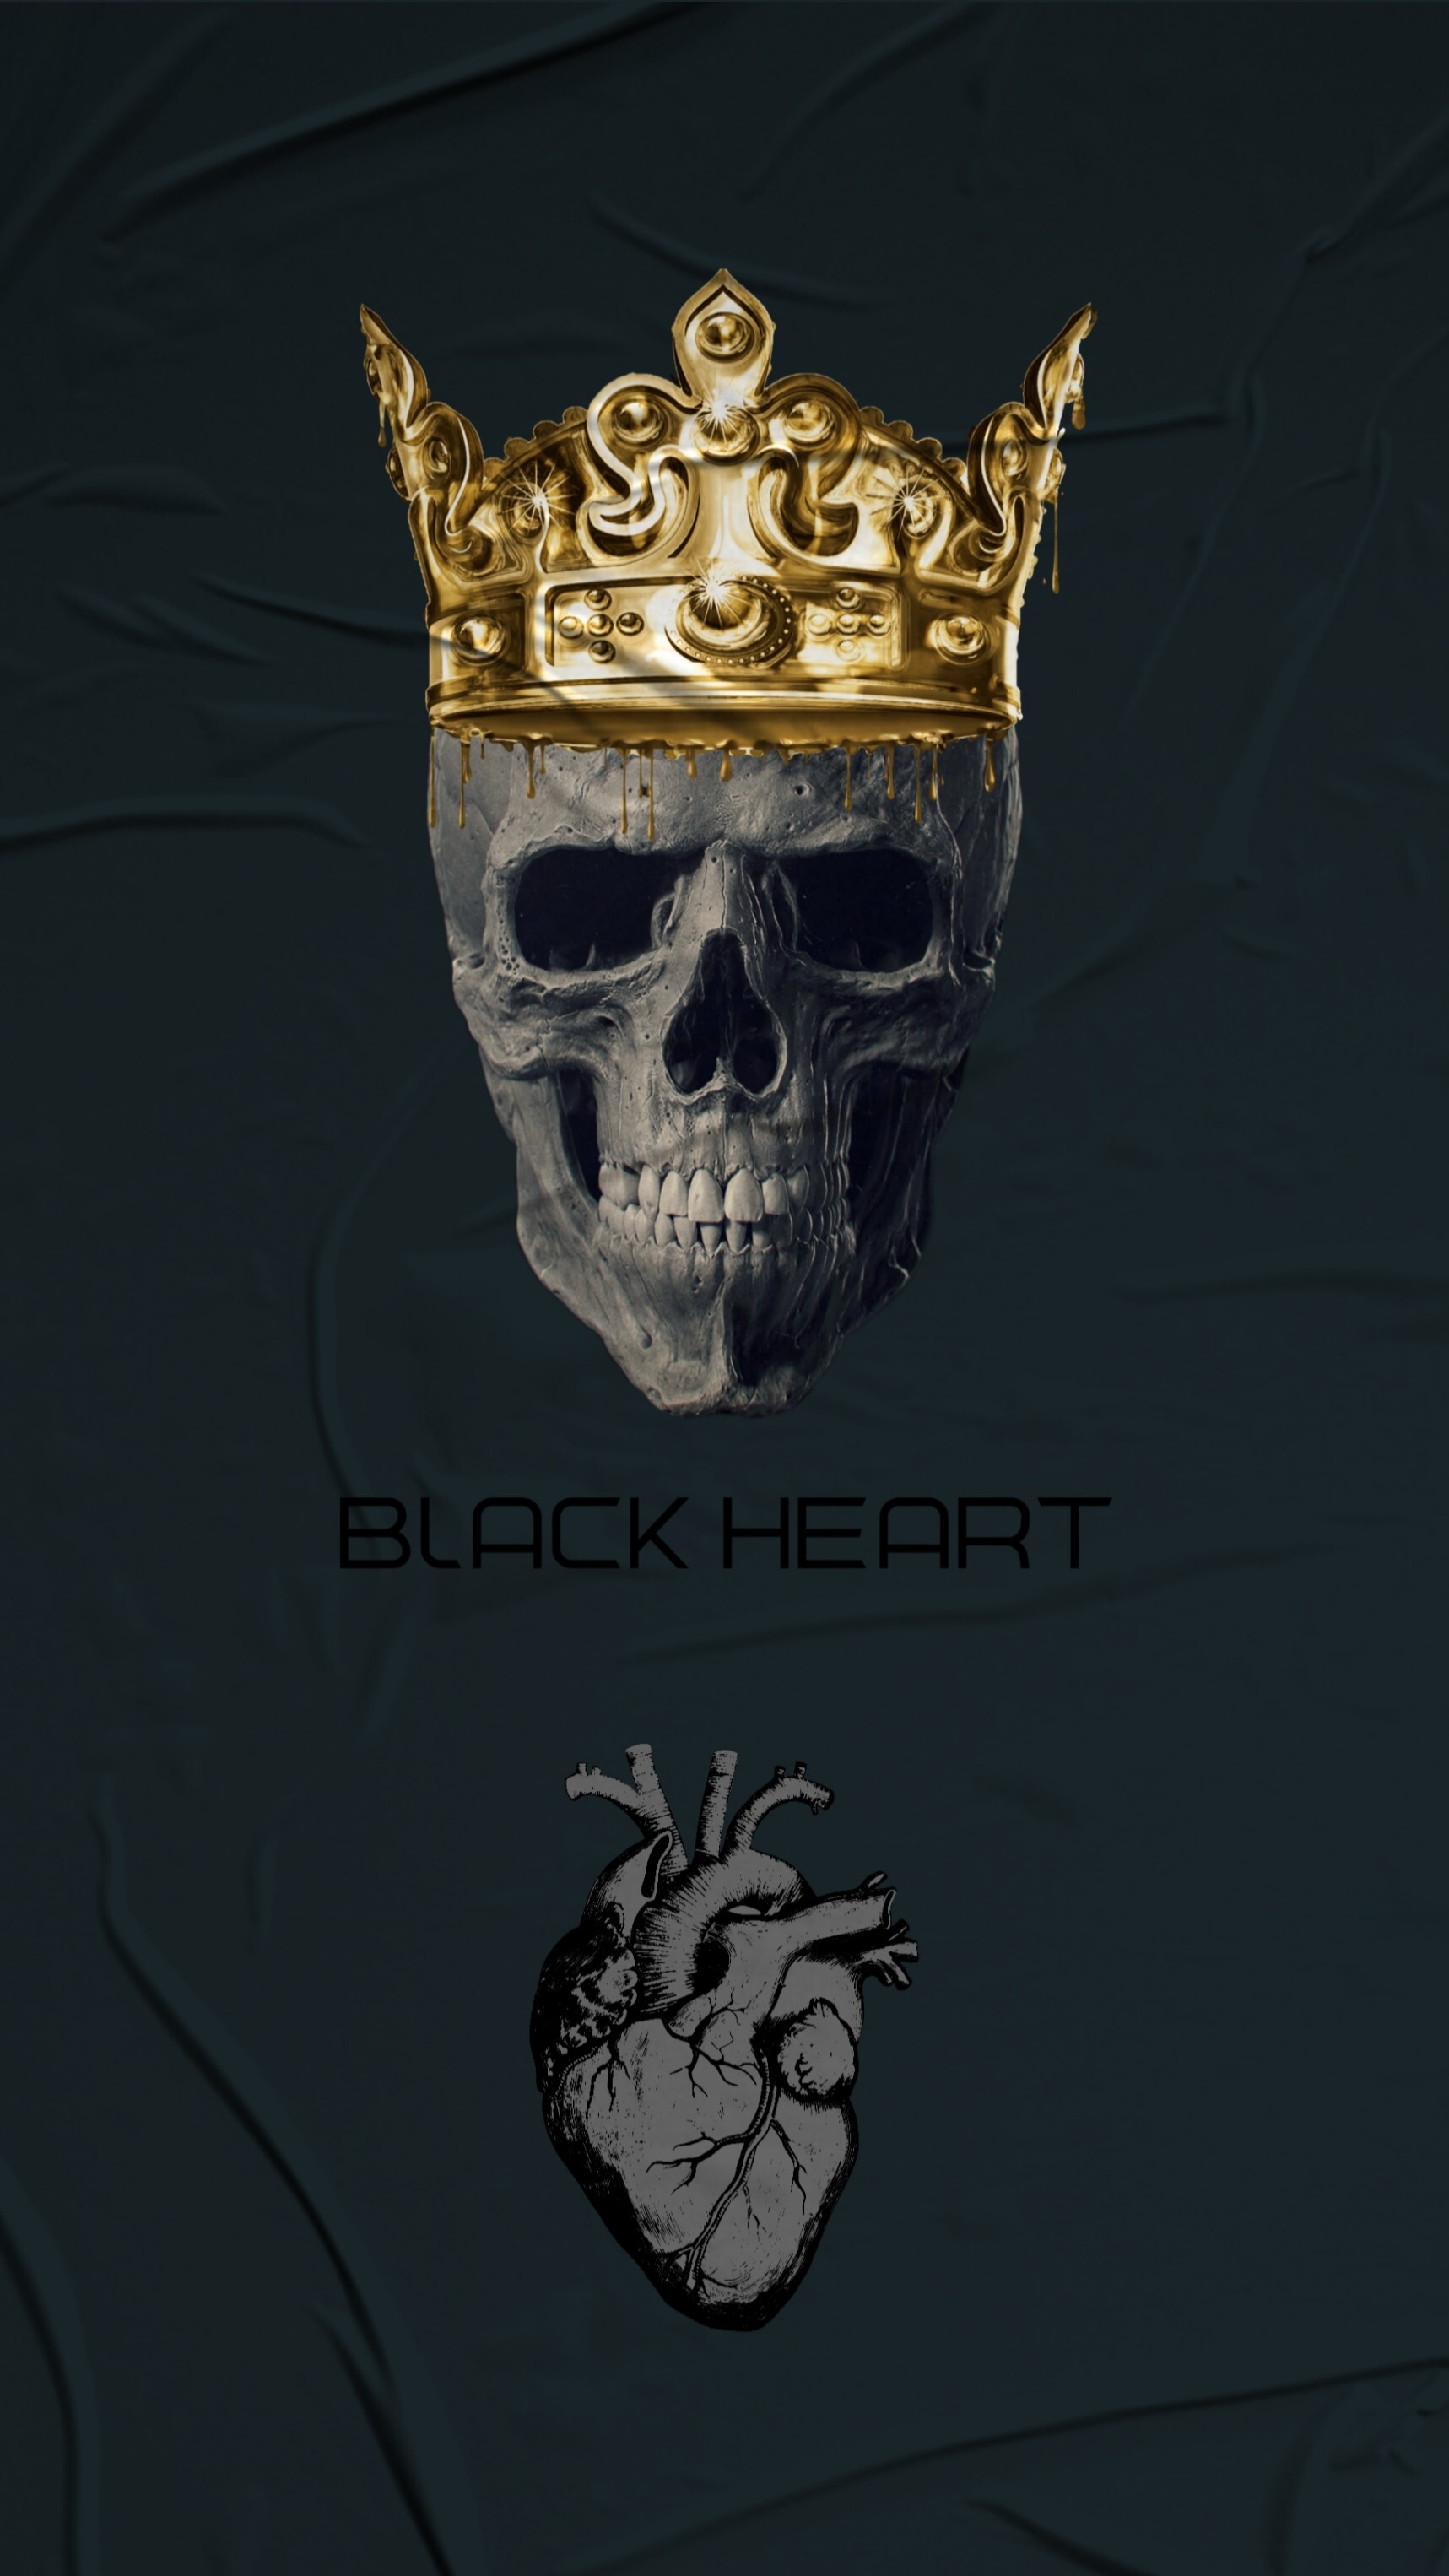 ArtStation - BLACK HEART - SKULL wallpaper